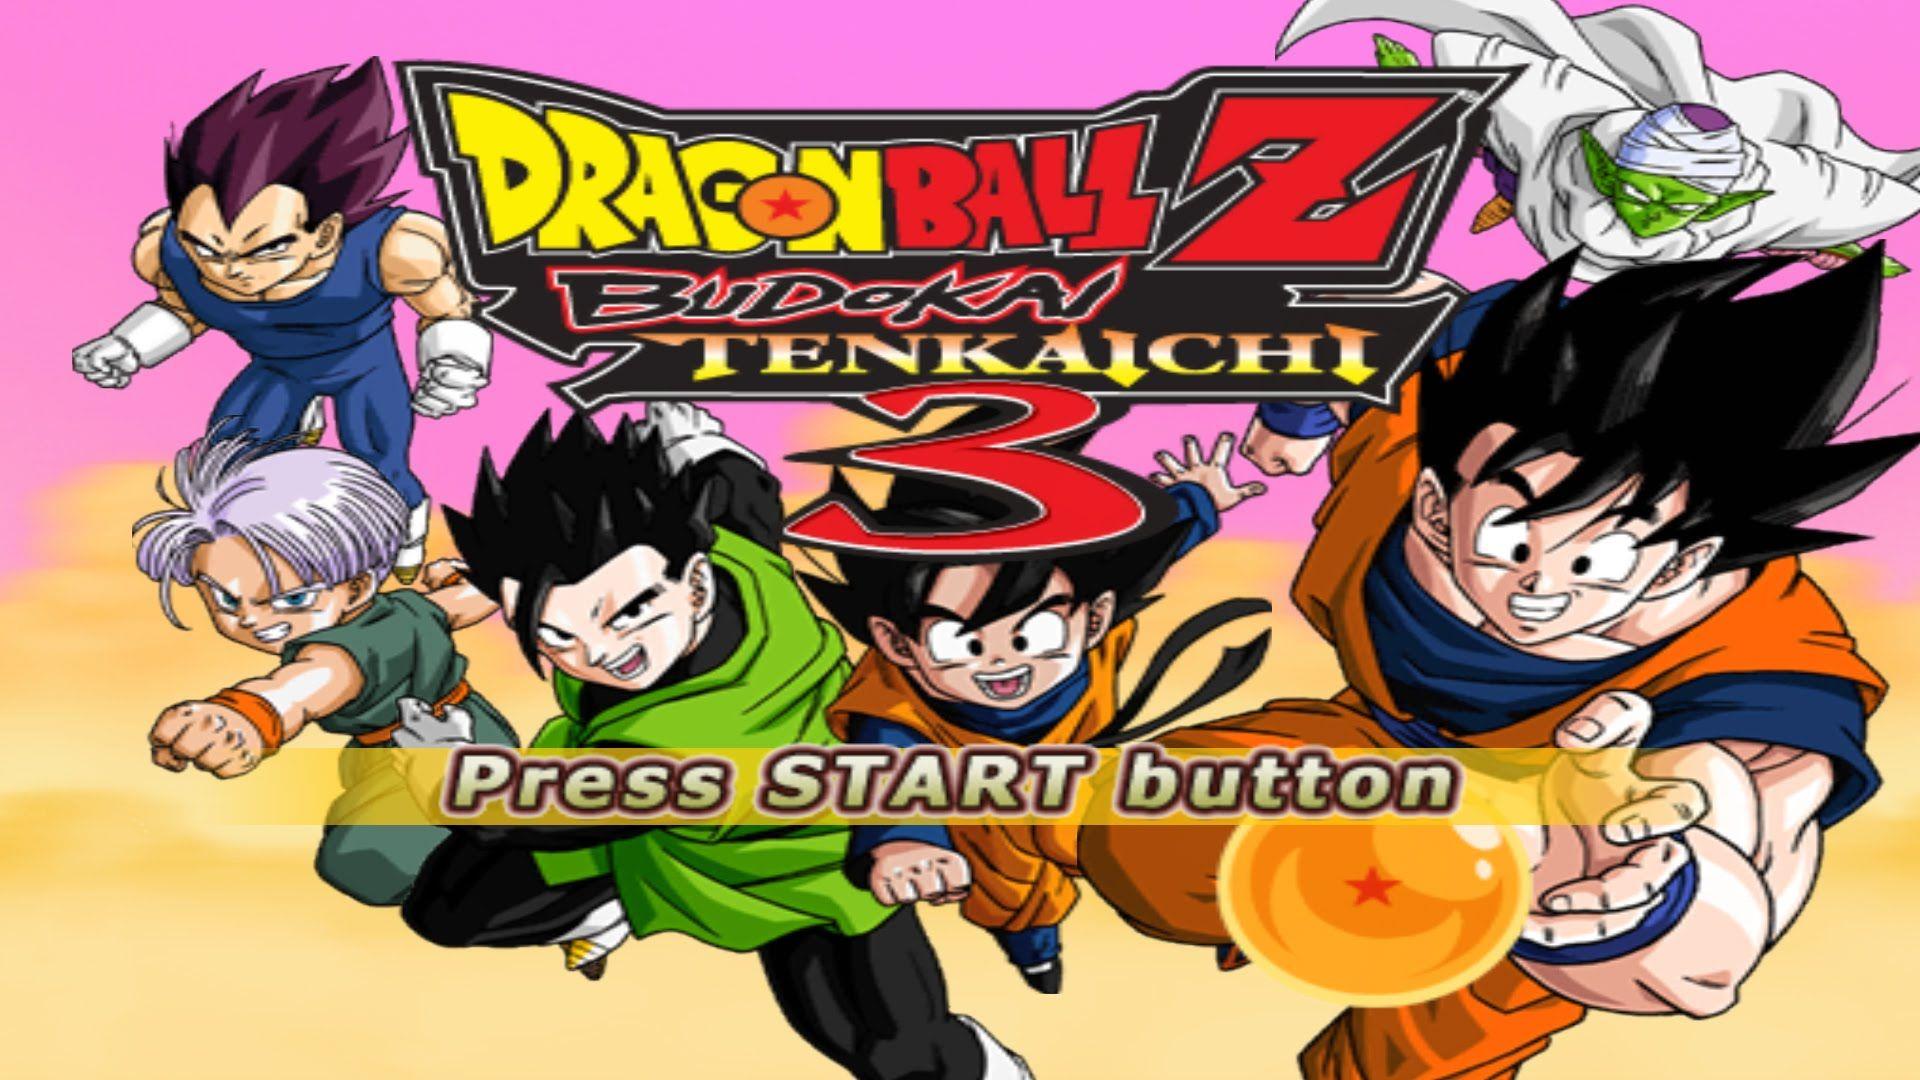 Dragon Ball Z Budokai Tenkaichi 3 PS2 ISO Download - SafeROMs